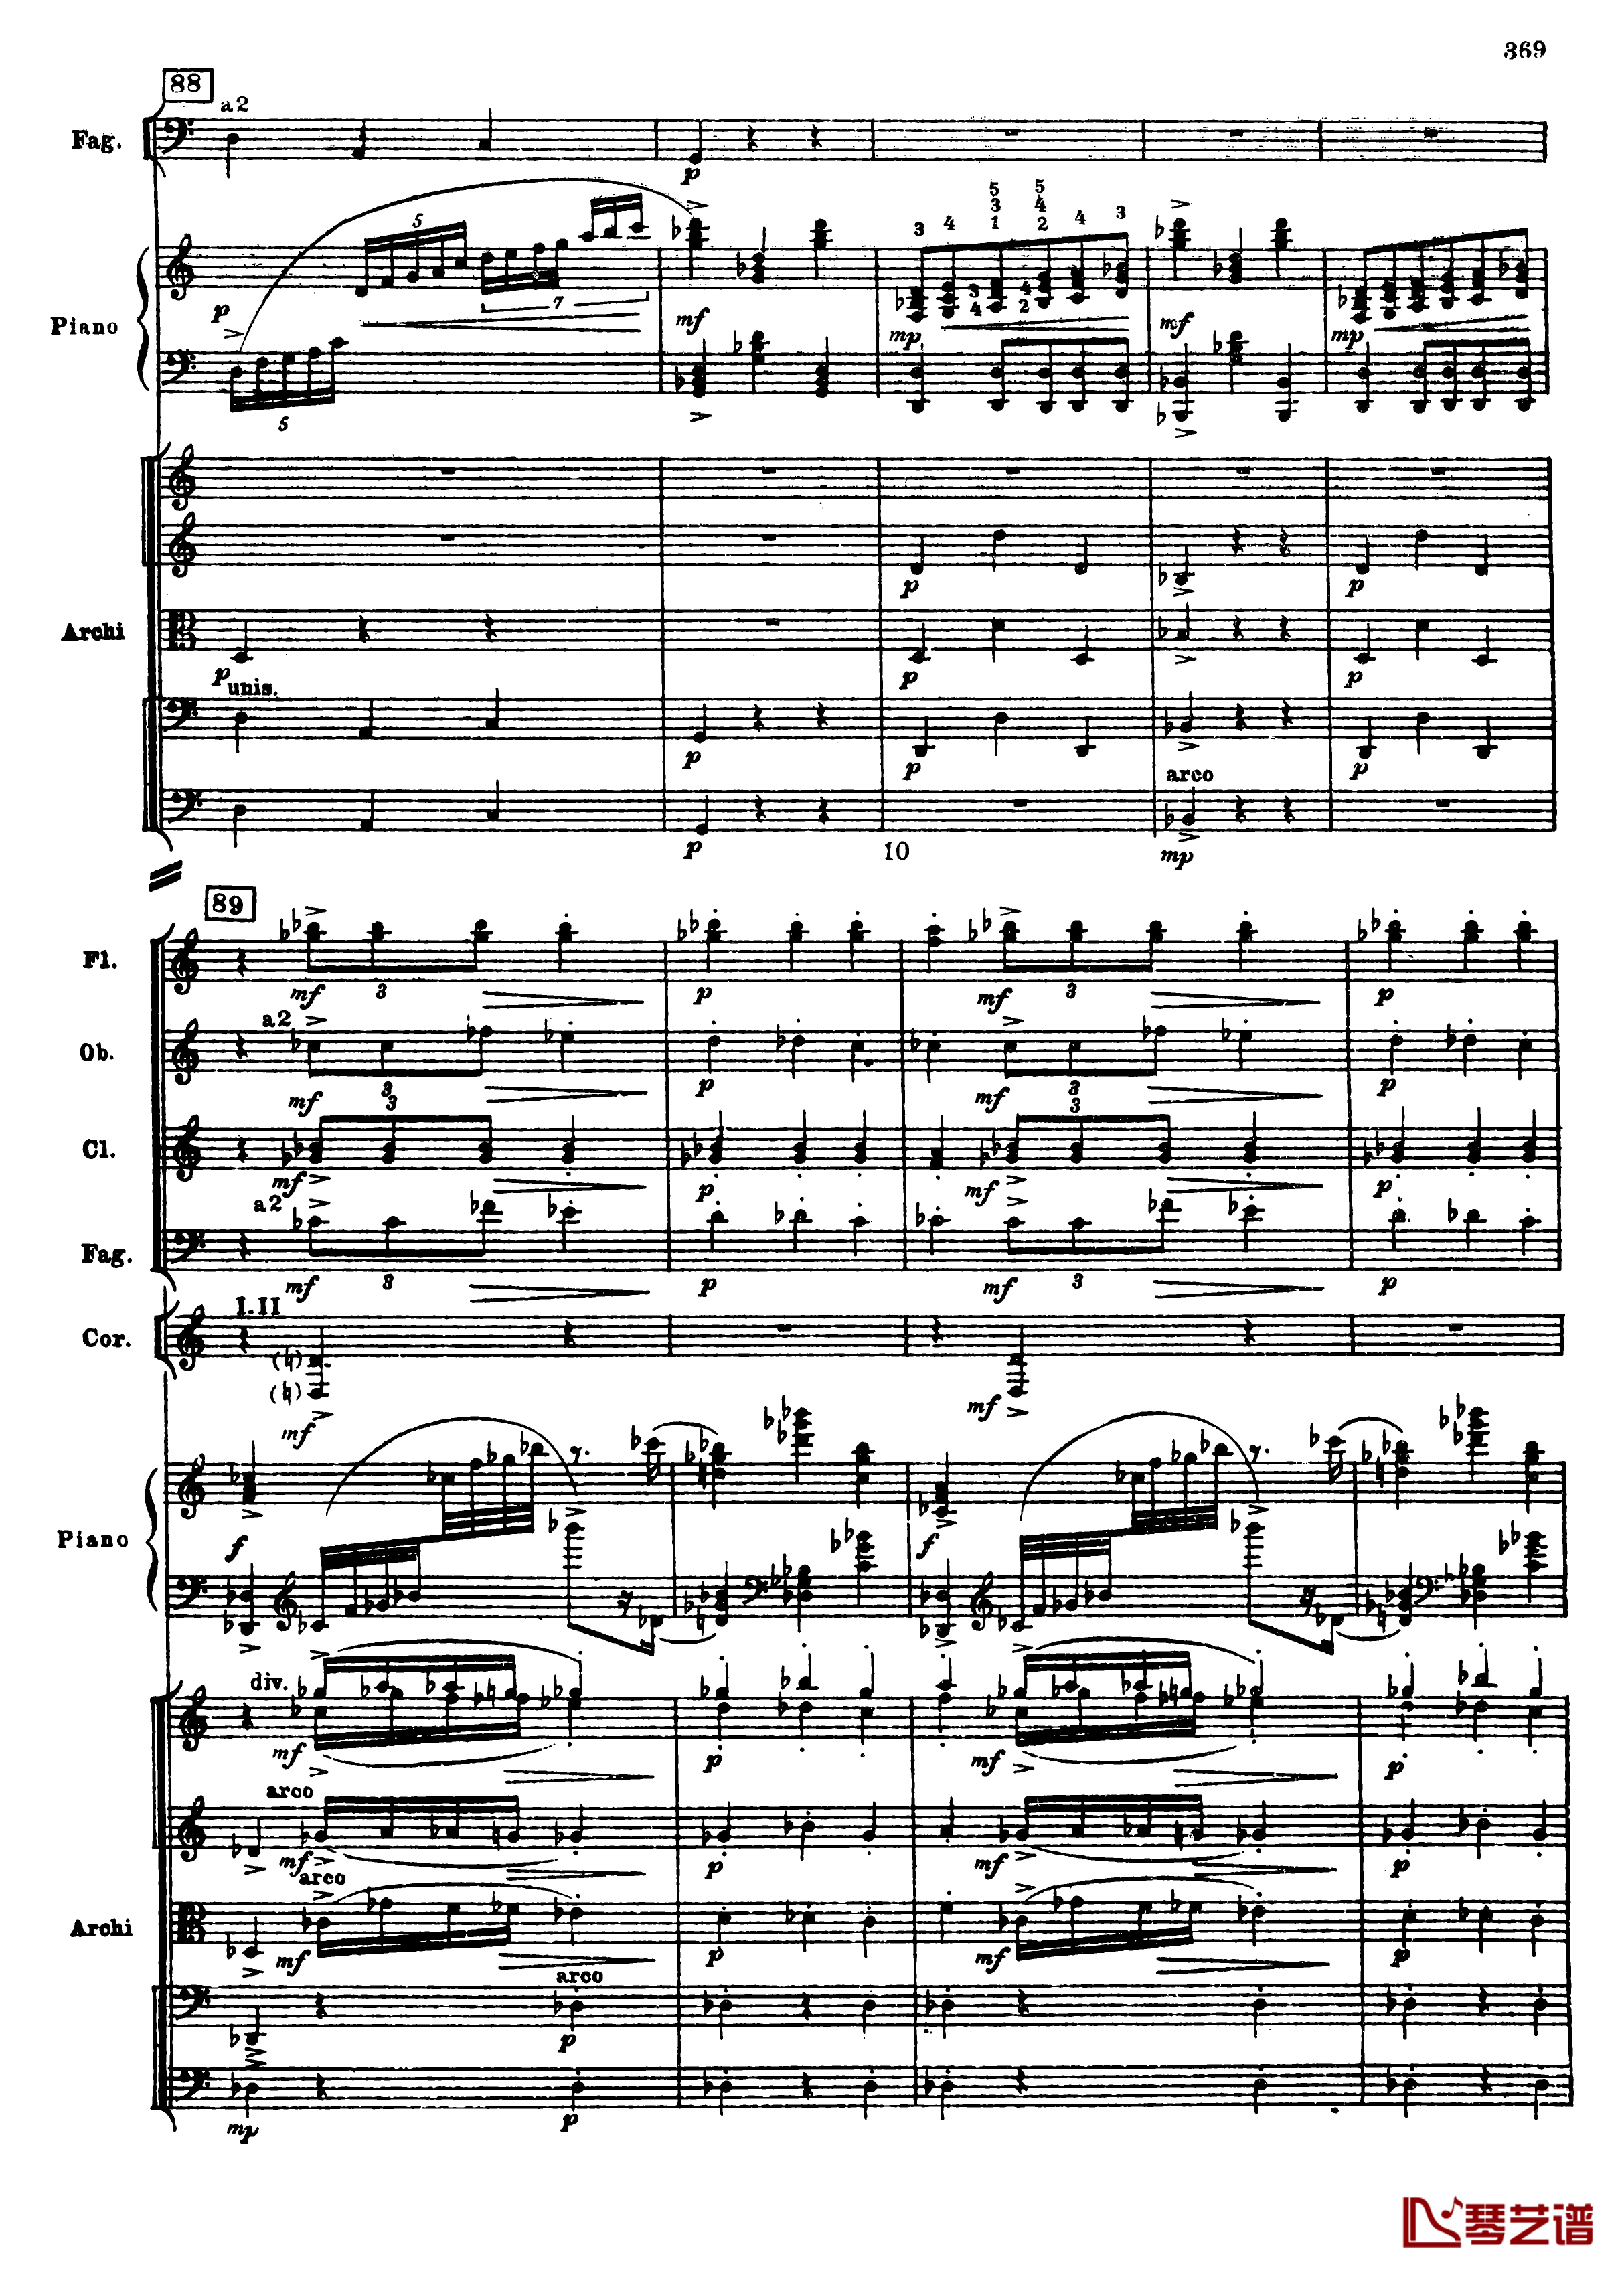 普罗科菲耶夫第三钢琴协奏曲钢琴谱-总谱-普罗科非耶夫101